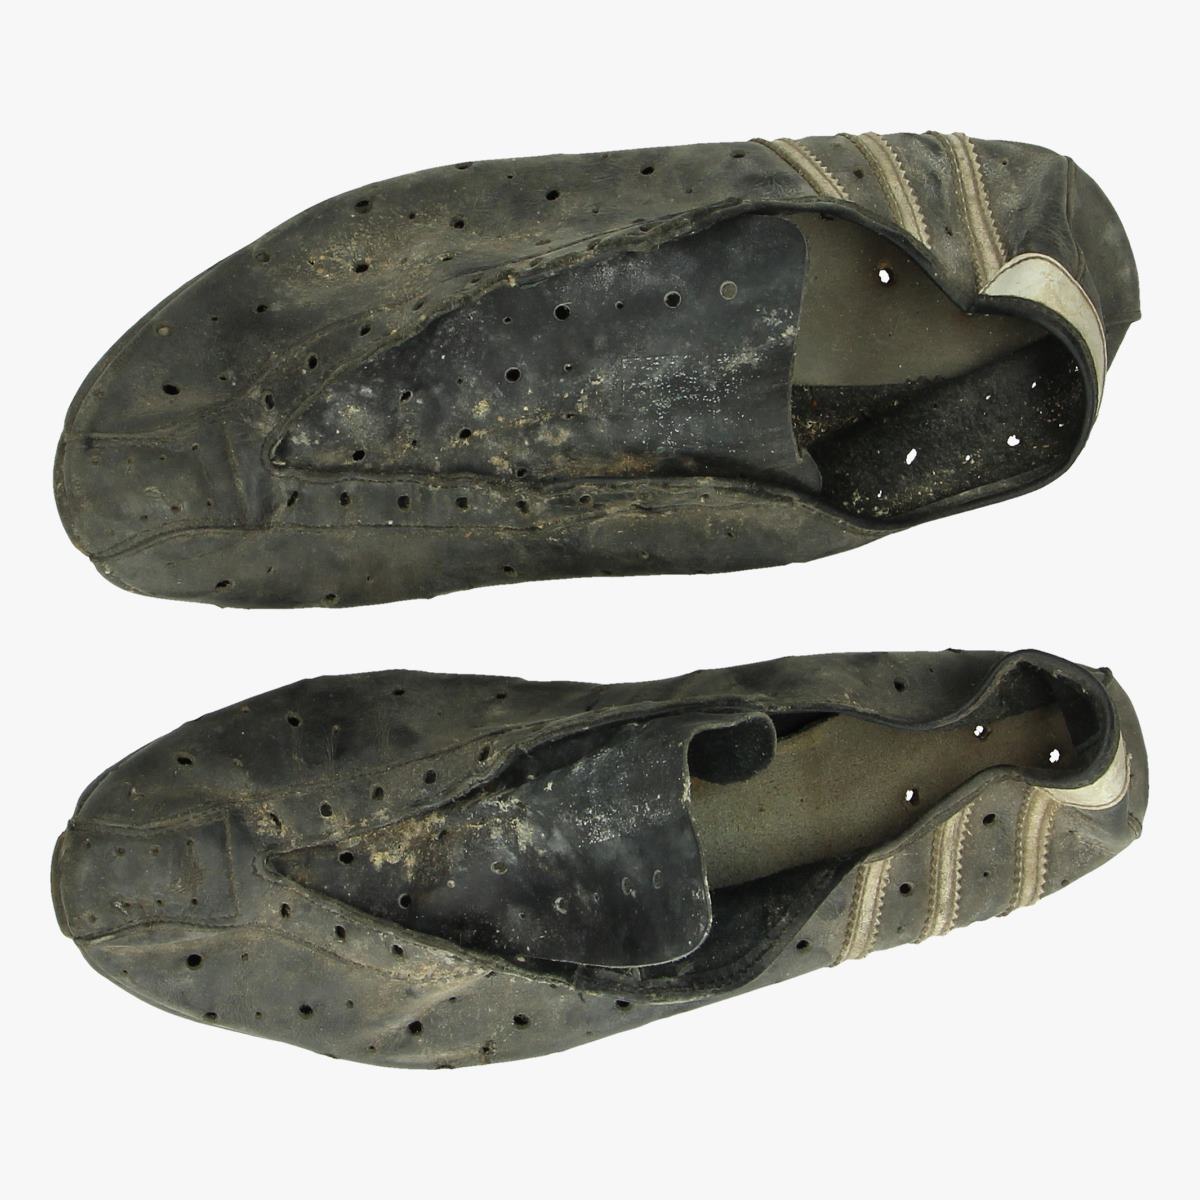 Afbeeldingen van oude wielrenners schoenen